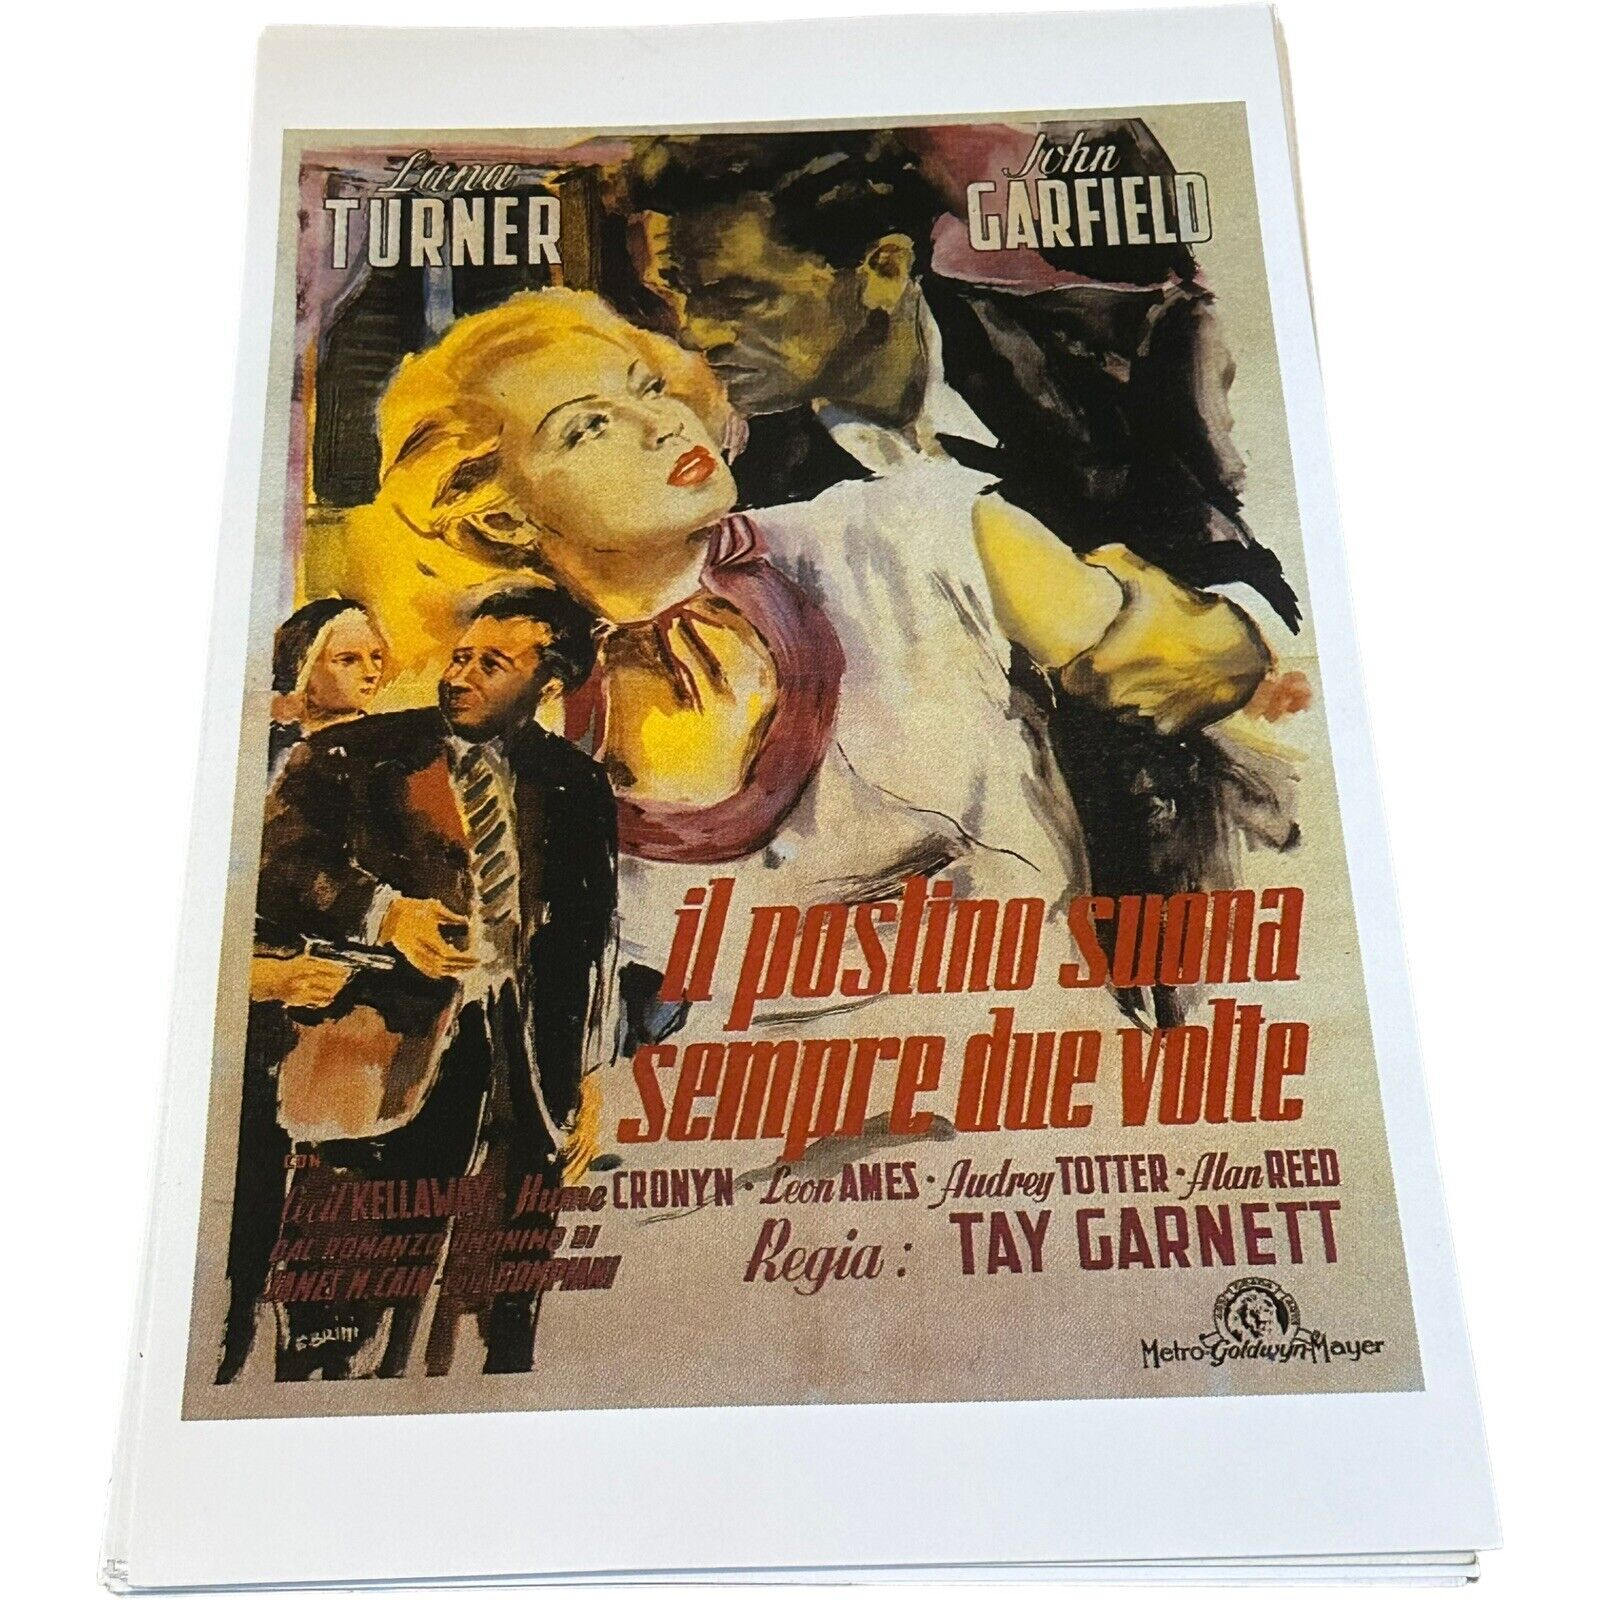 Luna Turner, John Garfield, Il Postino Suona Sempre Due Volte, Poster 11 x 17